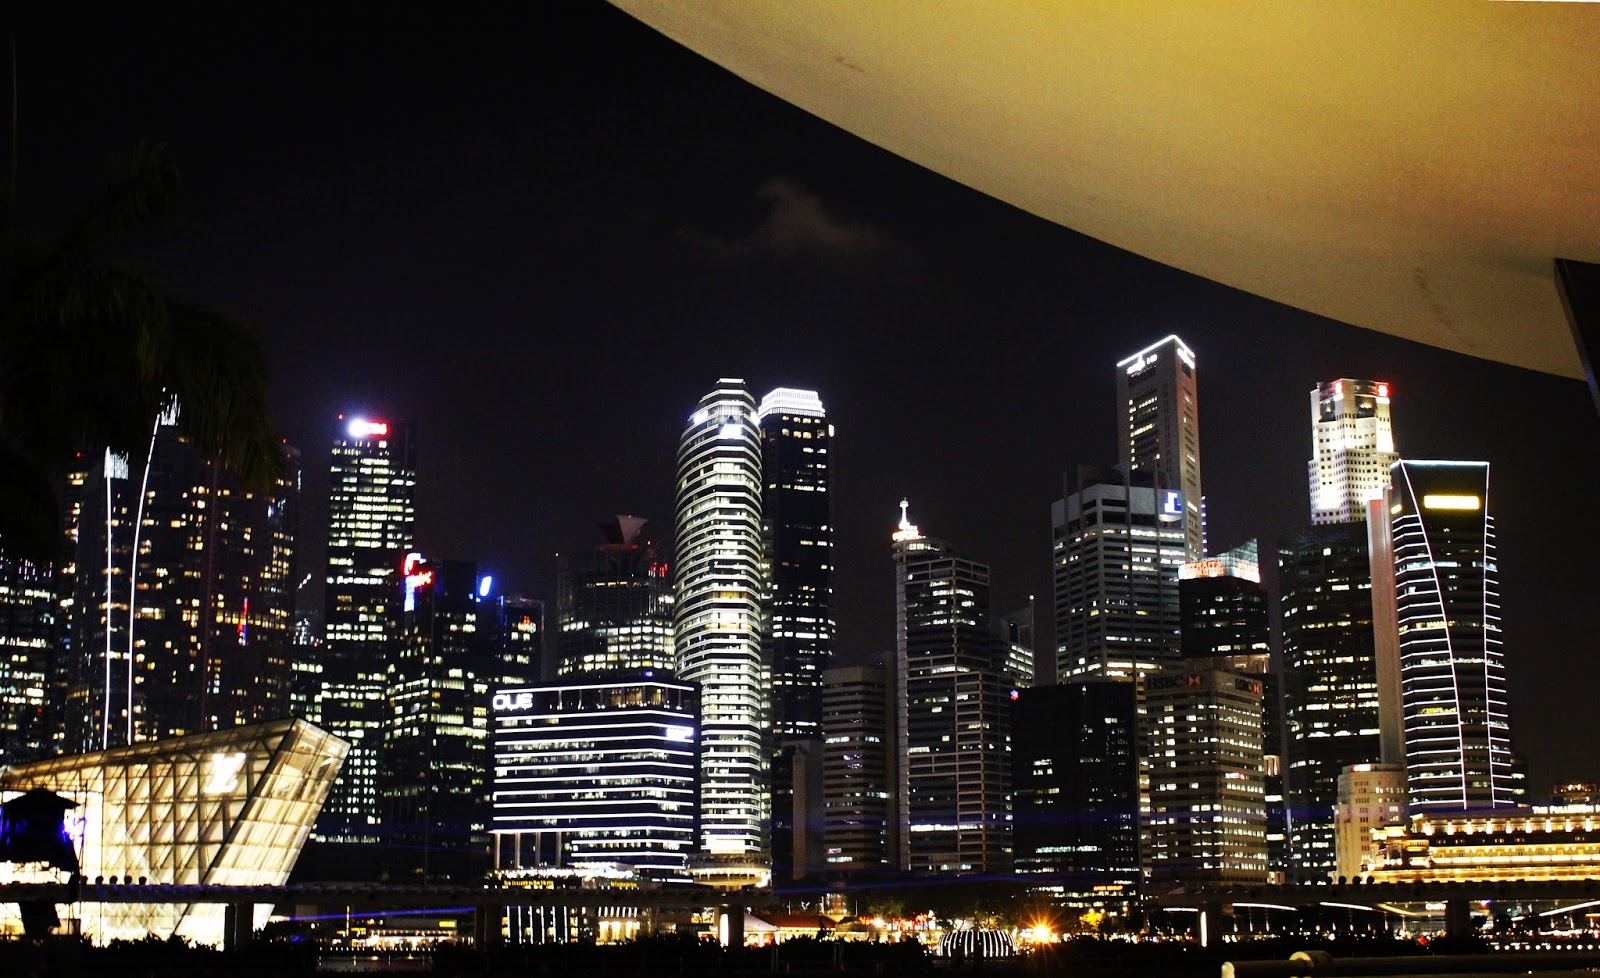 Tempat Wisata Favorit Di Singapore Yang Harus Dikunjungi